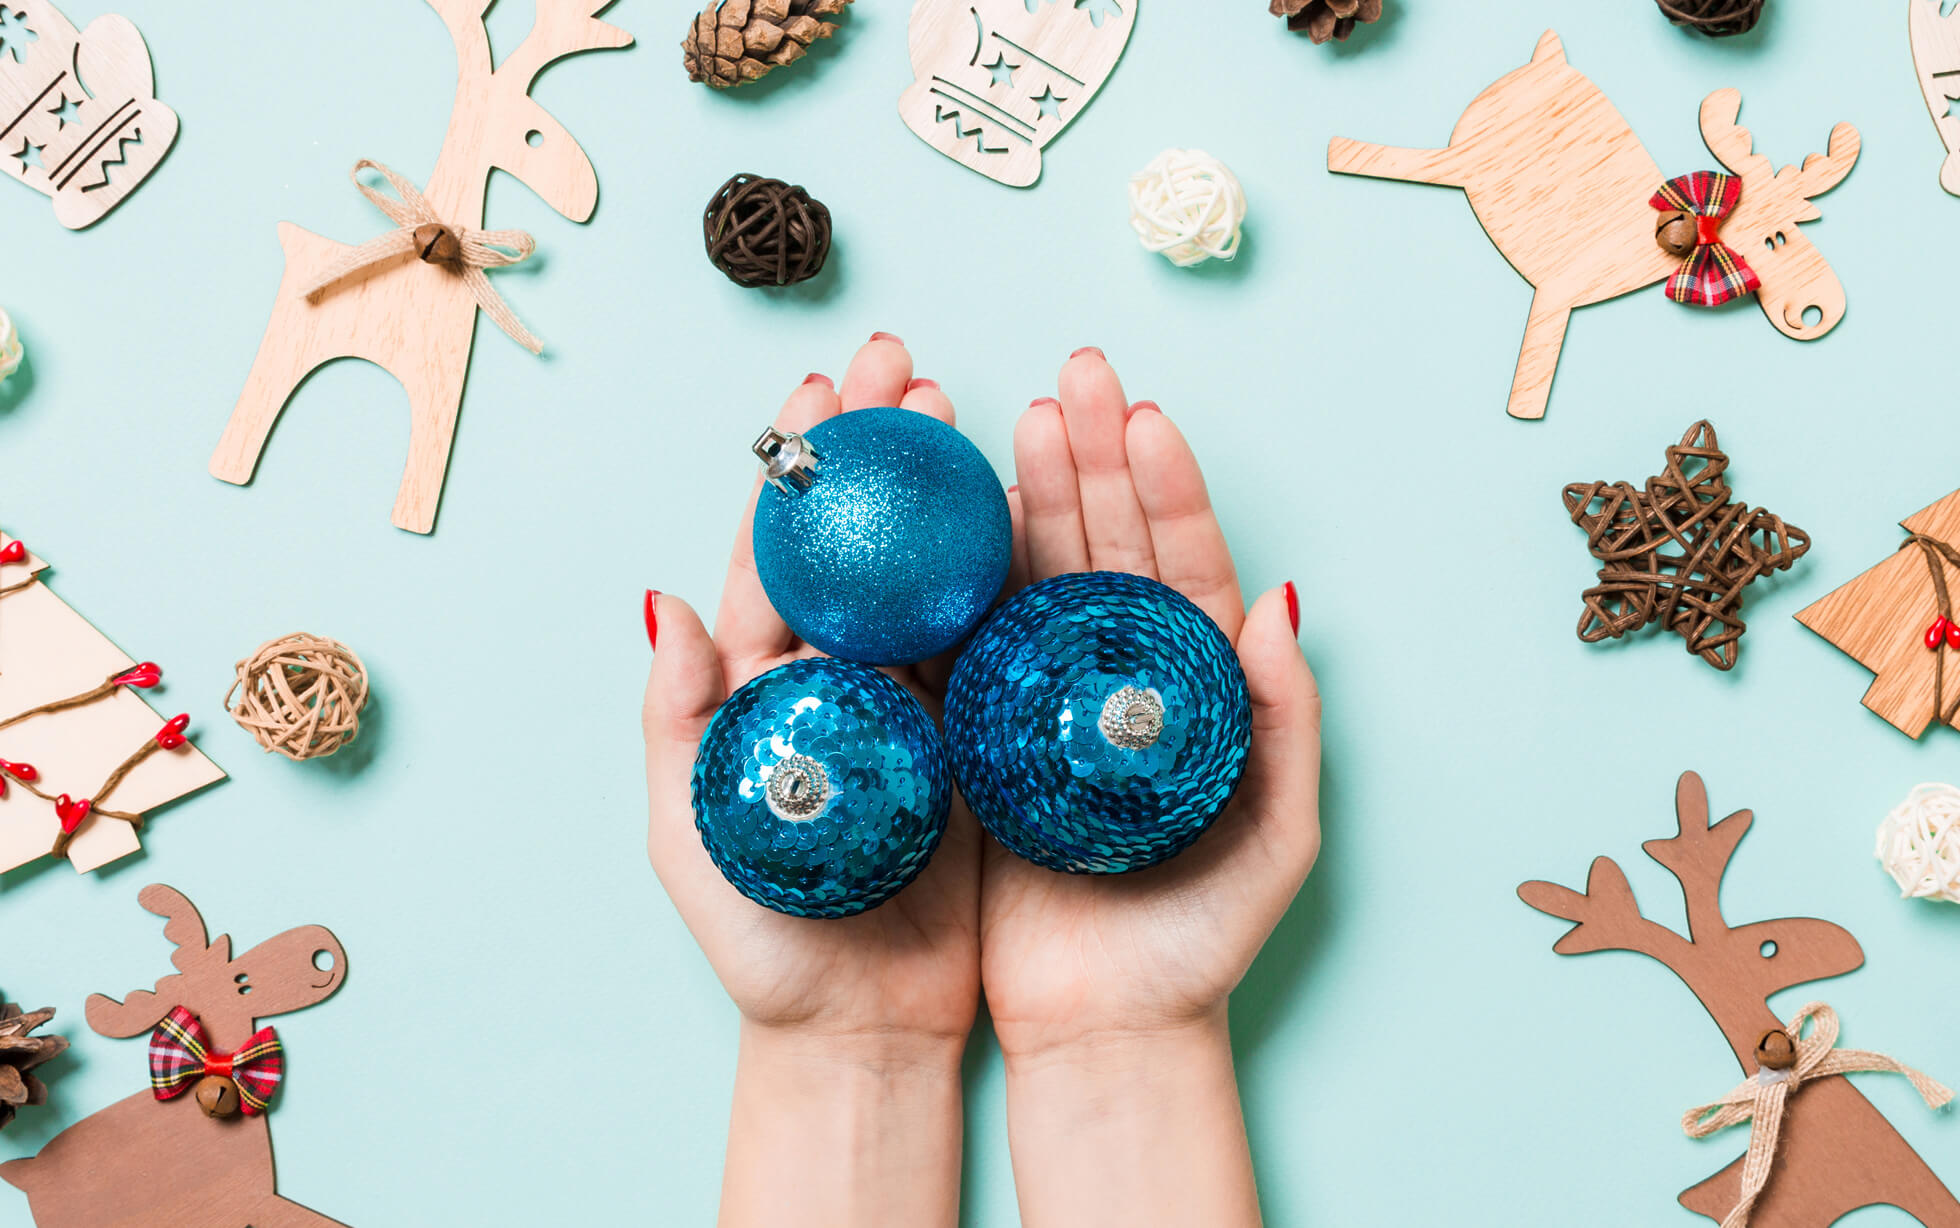 Cómo decorar las bolas de Navidad de poliespan?